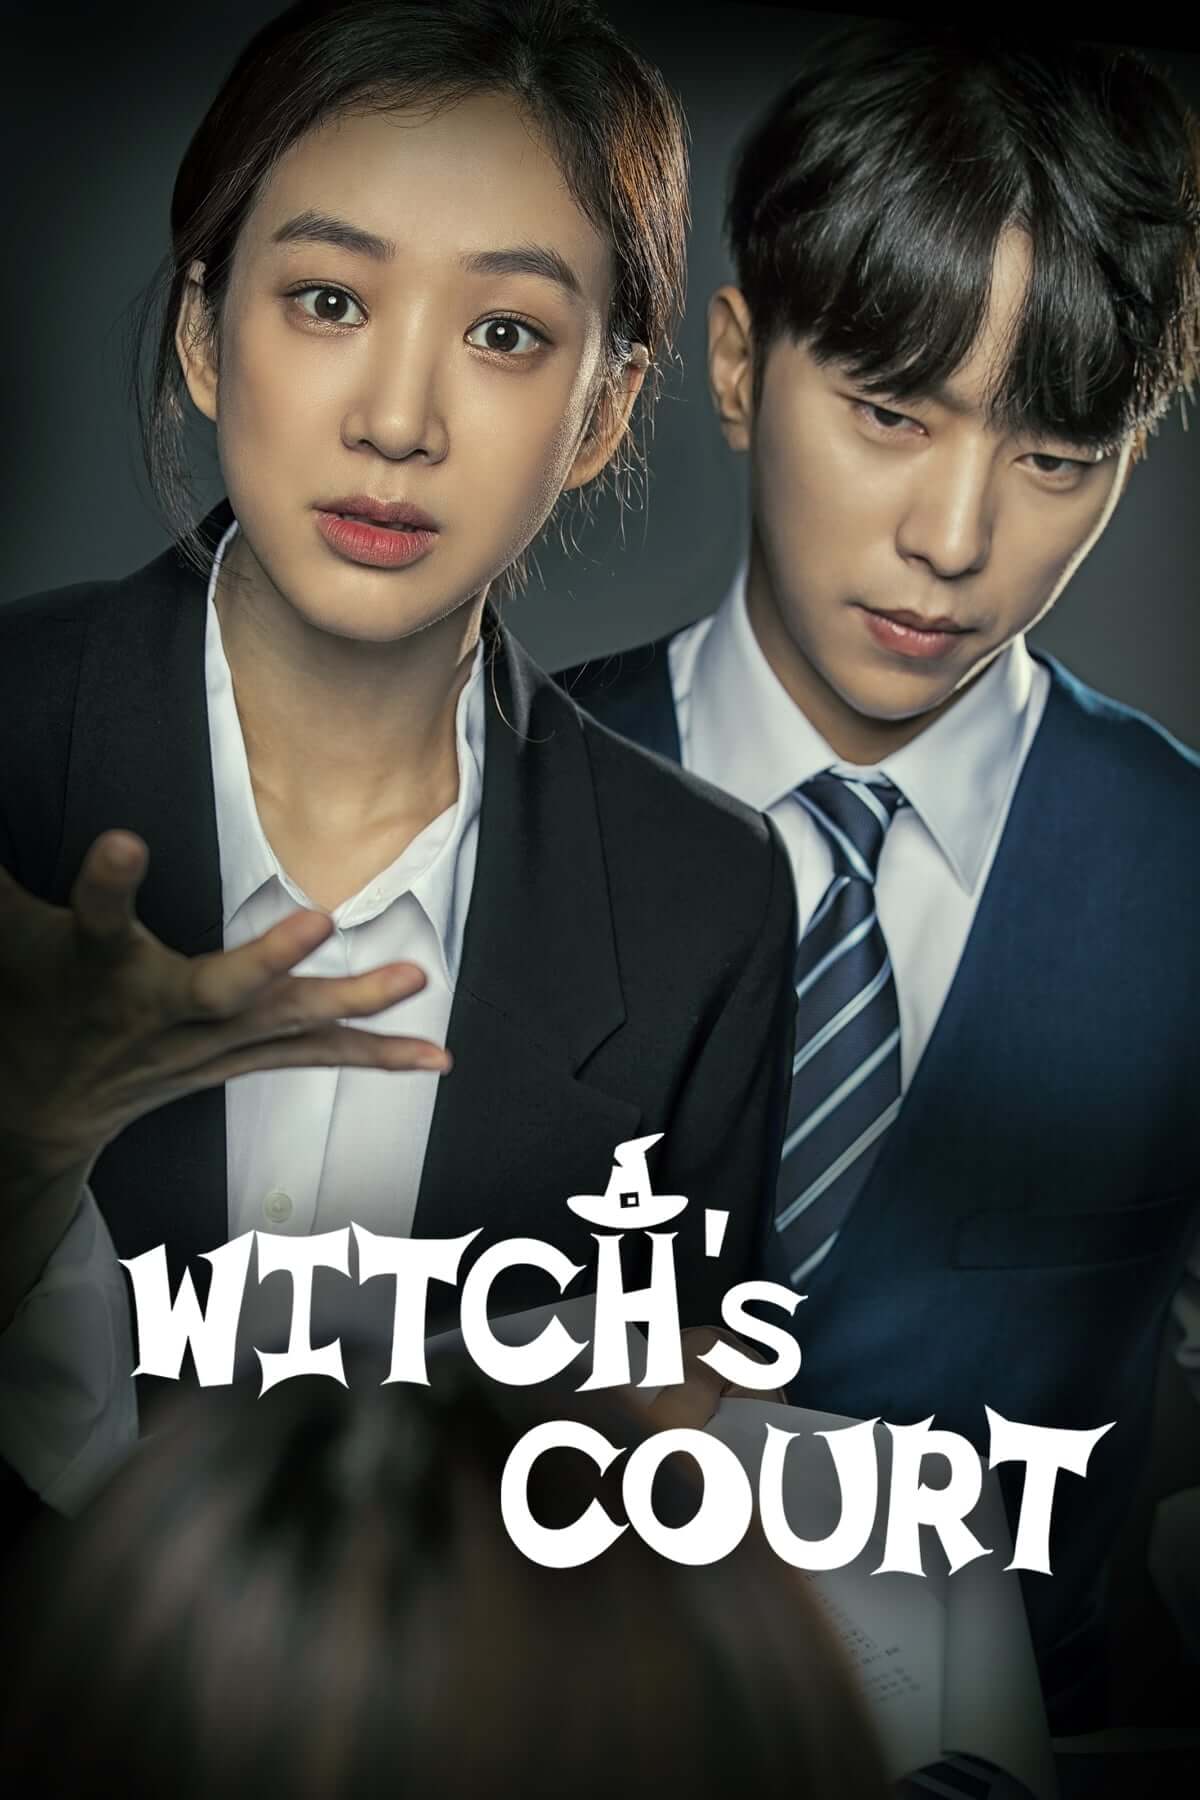 دادگاه جادوگر (Witch’s Court)